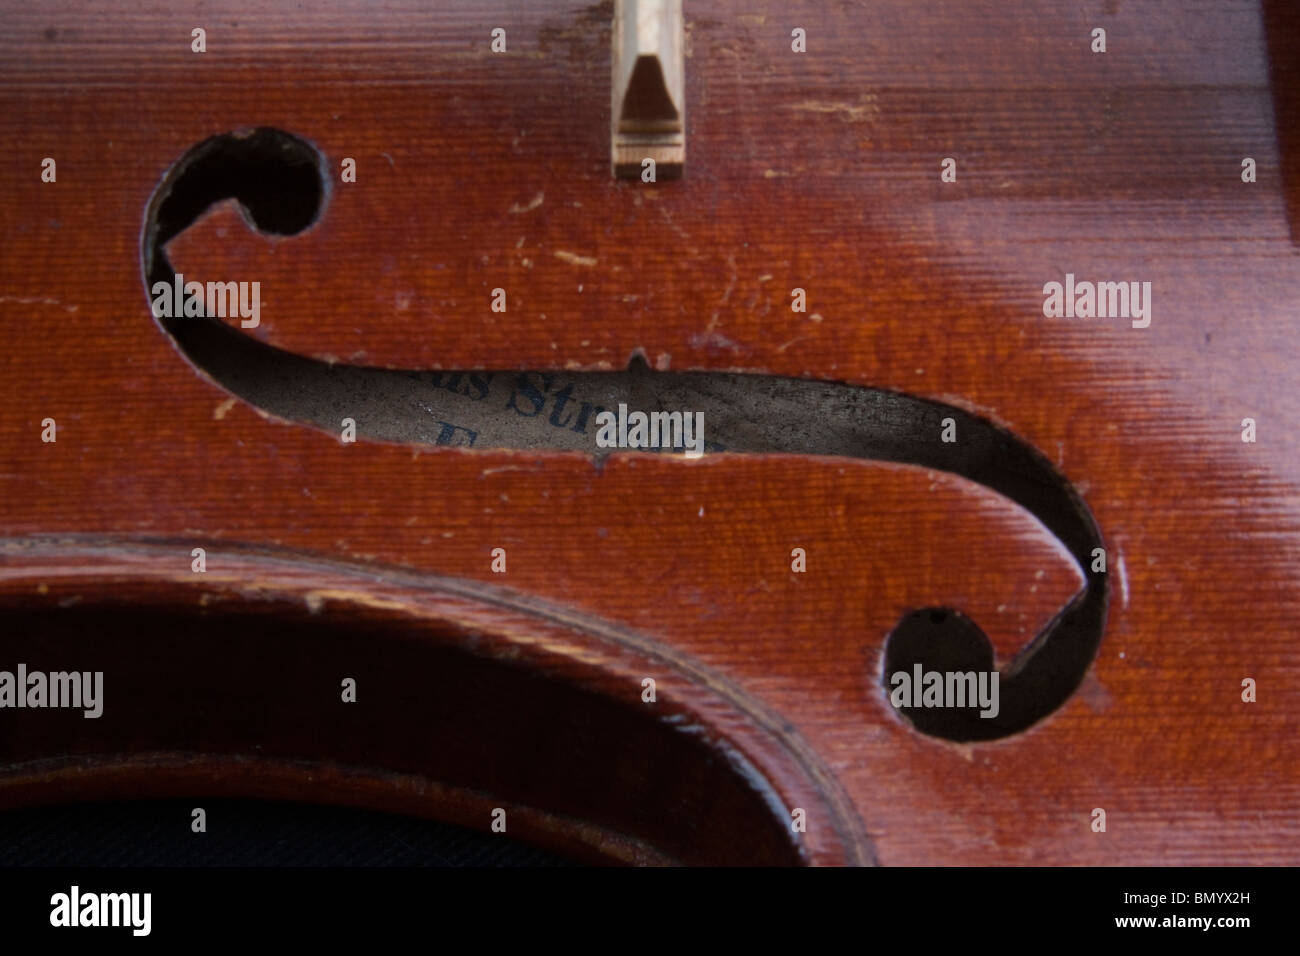 Un violon Stradivarius, et les détails de l'intérieur label Antonius Stradivarius Cremonensis. Cremona 104947 Horizontal Banque D'Images